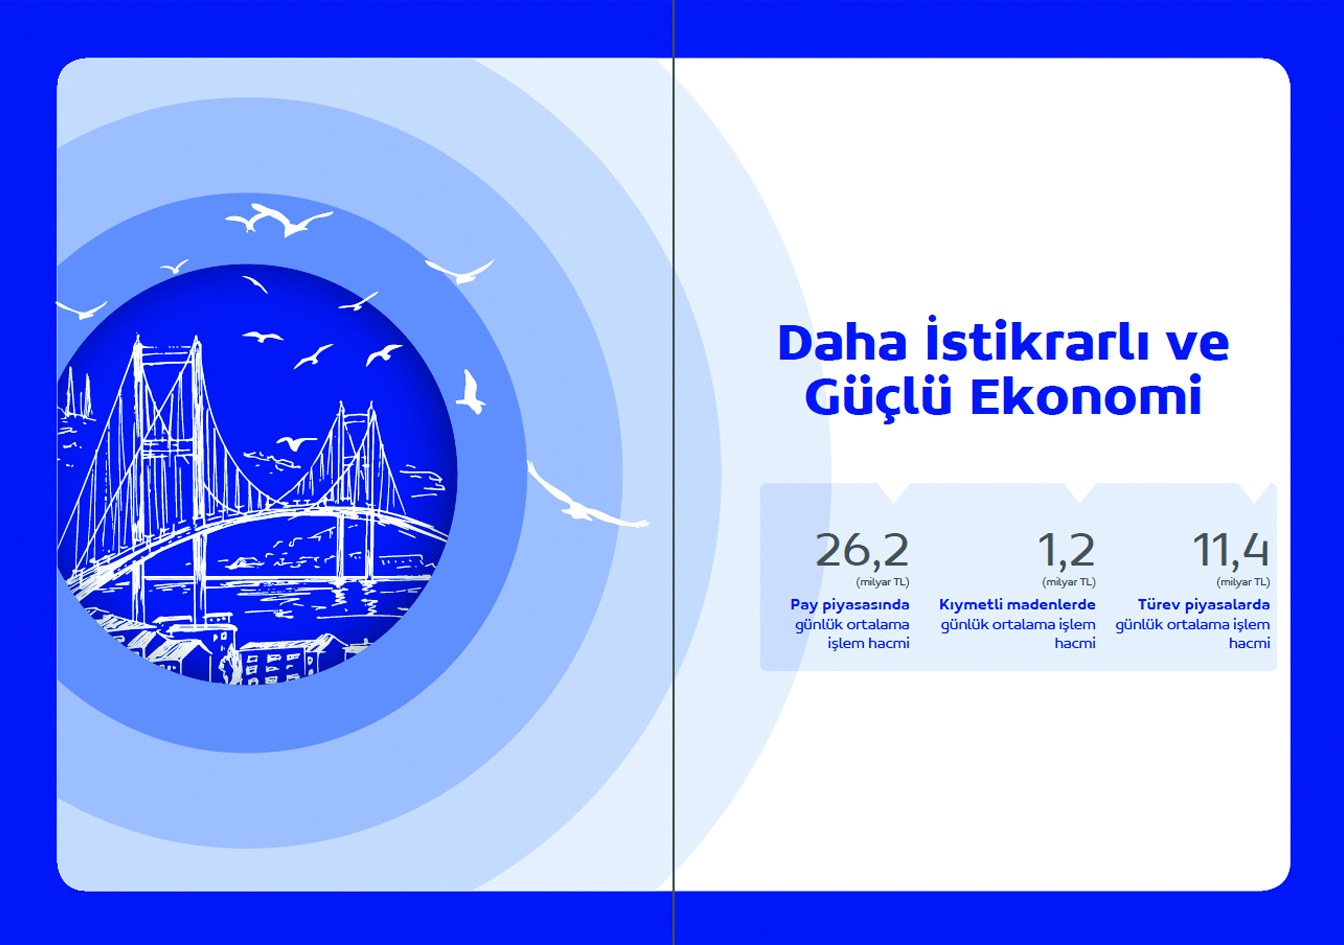 TAKASBANK / 2020 Faaliyet Raporu / 2020 Annual Report